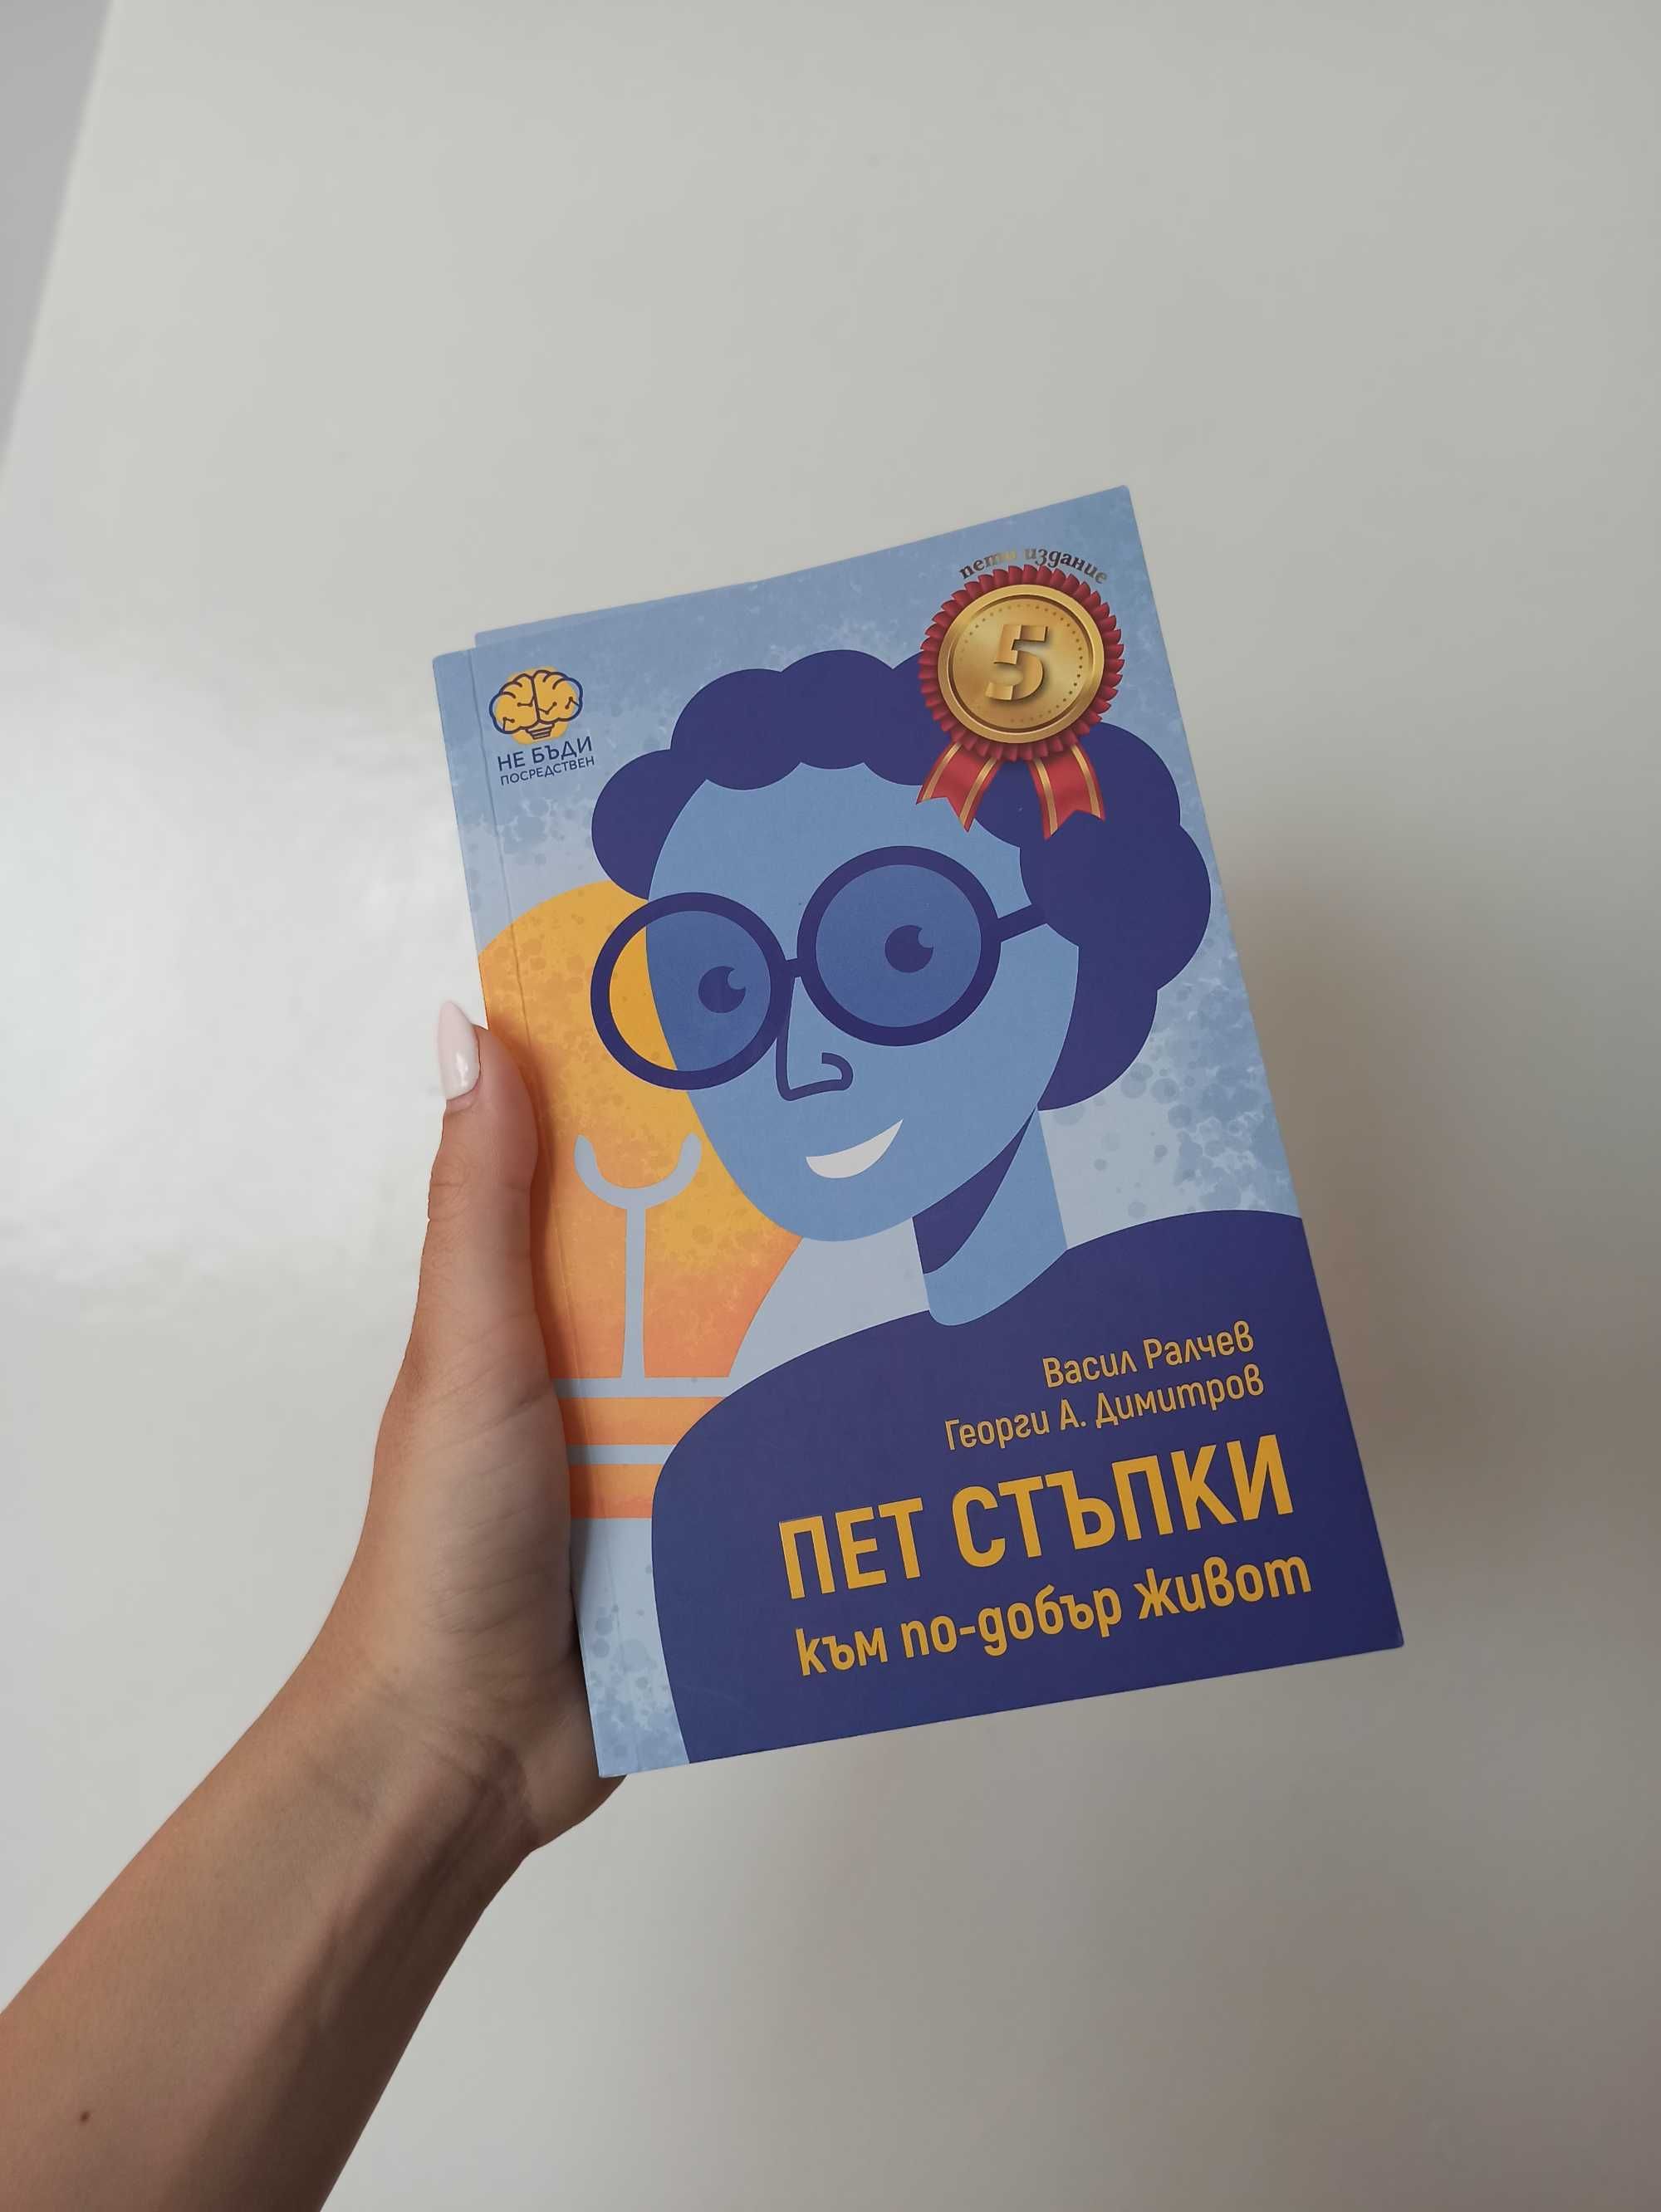 Книга Пет стъпки към по-добър живот - Васил Ралчев, Георги А. Димитров